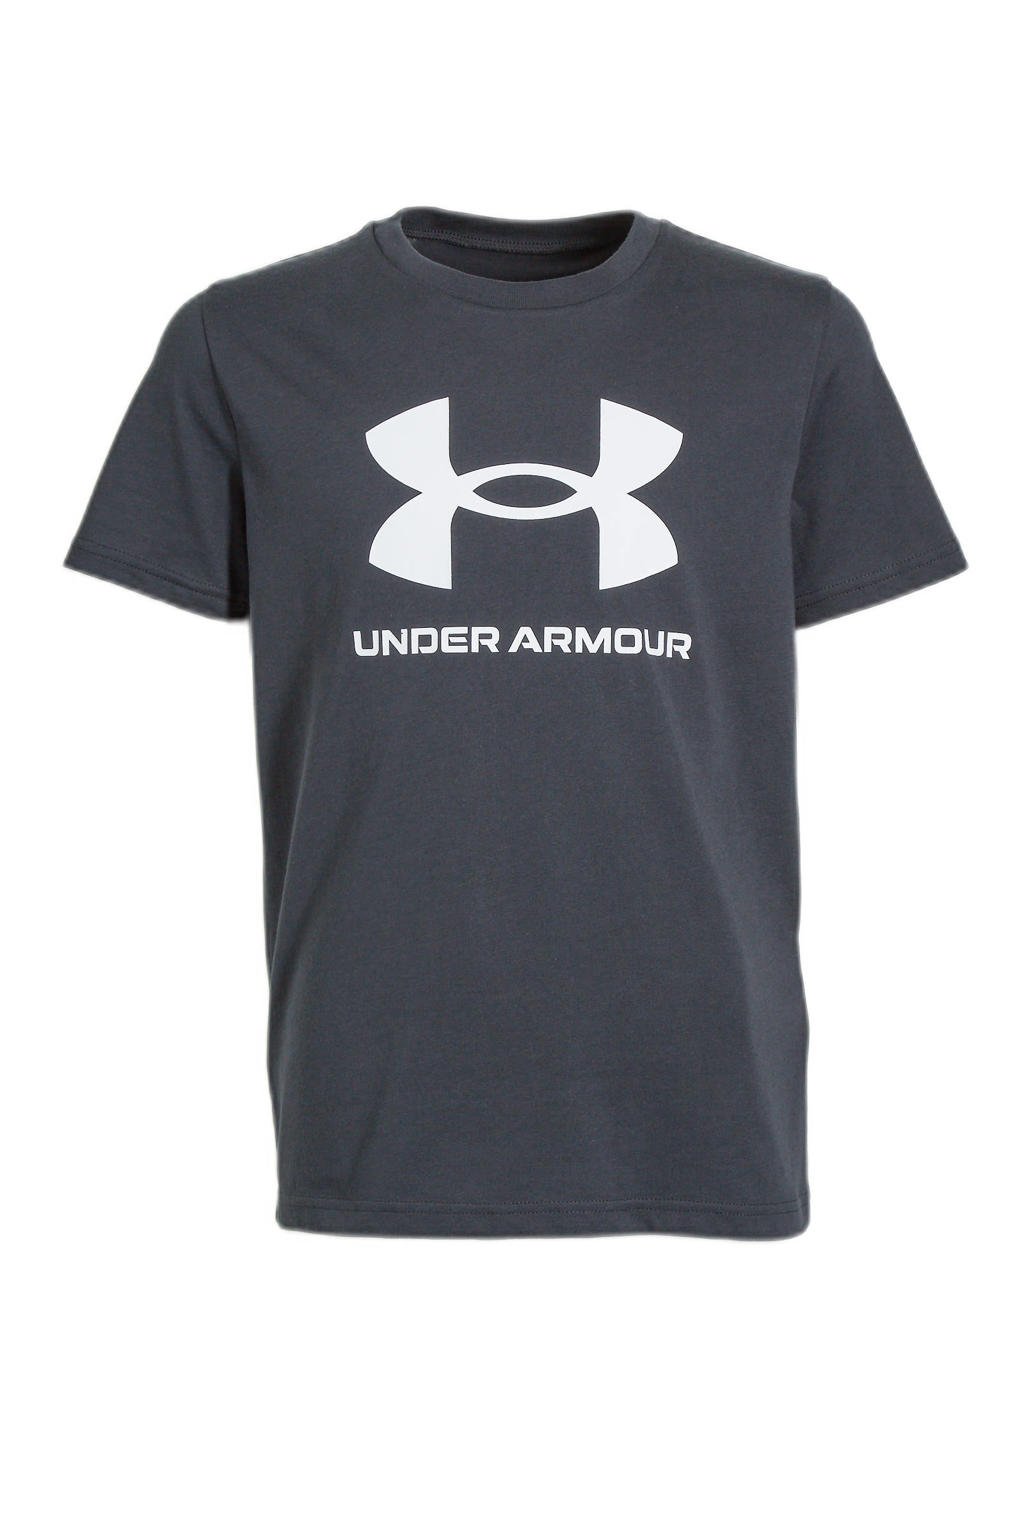 Zwarte jongens Under Armour sport T-shirt van katoen met logo dessin, korte mouwen en ronde hals